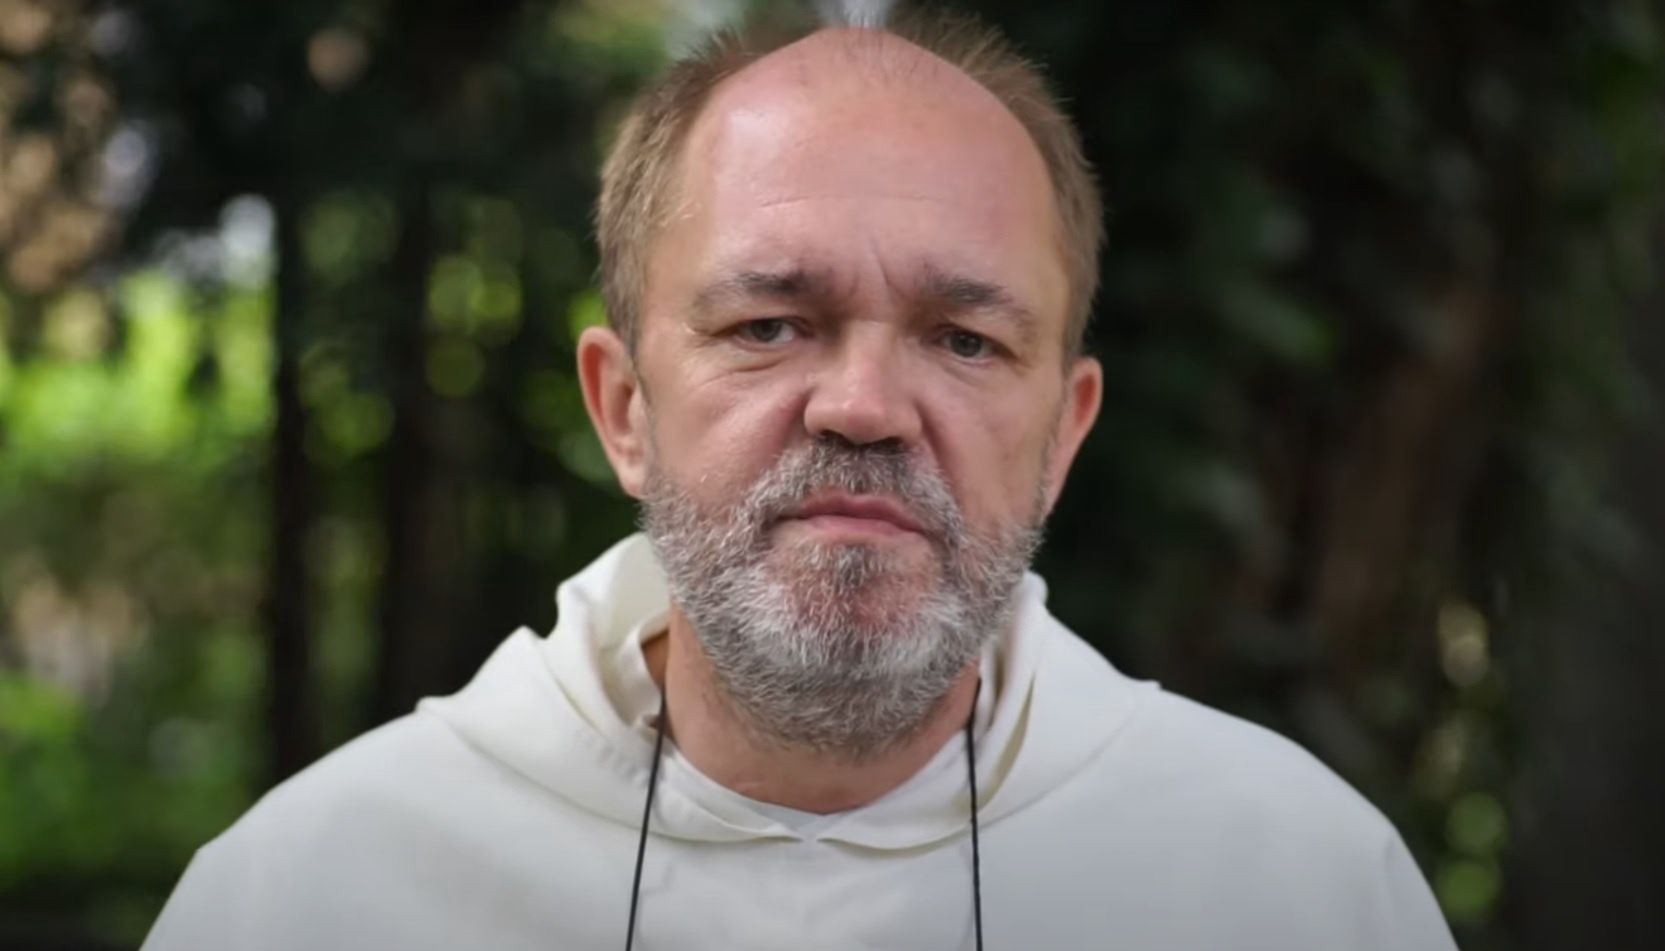 Duchowny nie pozostawia złudzeń. Kościół w Polsce "się zwija"